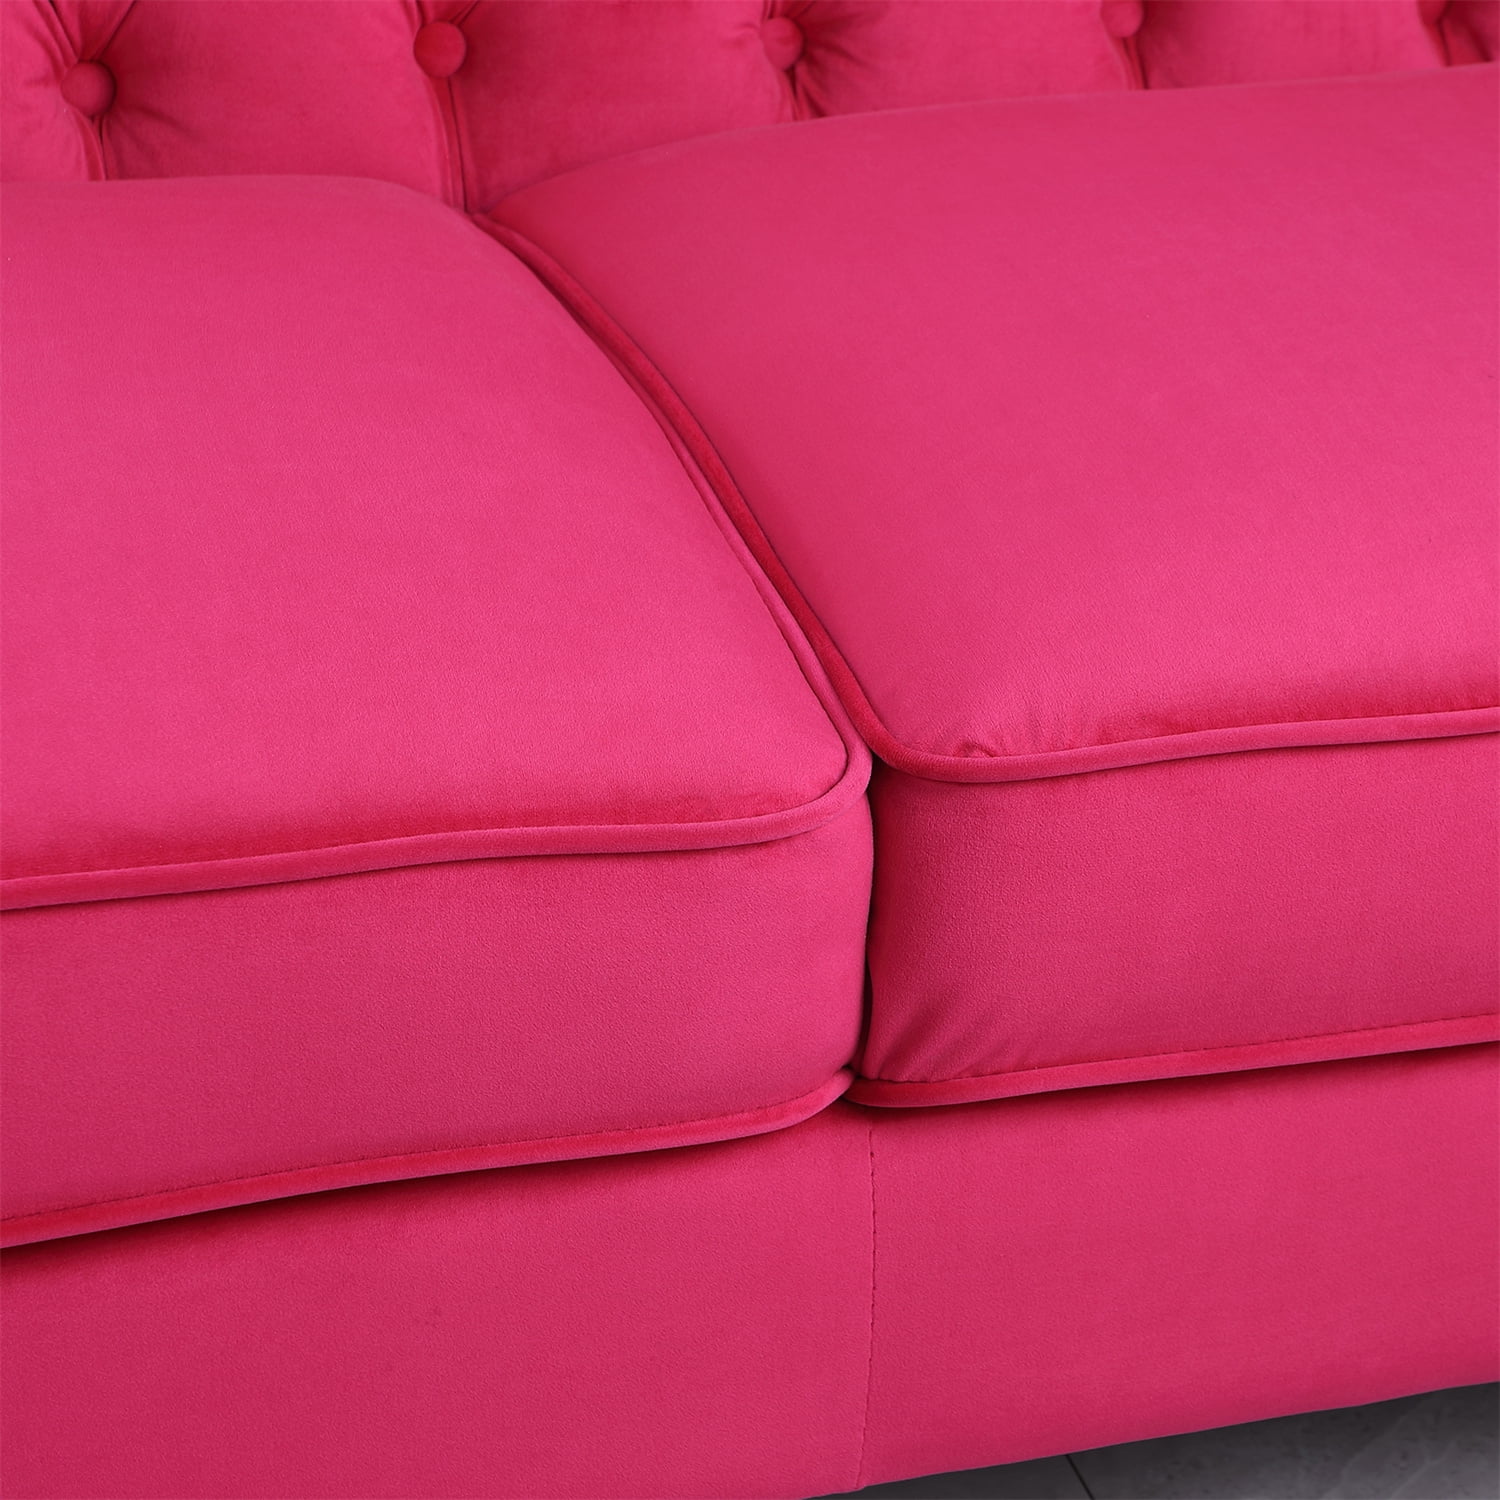 Chesterfield Sofa Modern Tufted Velvet